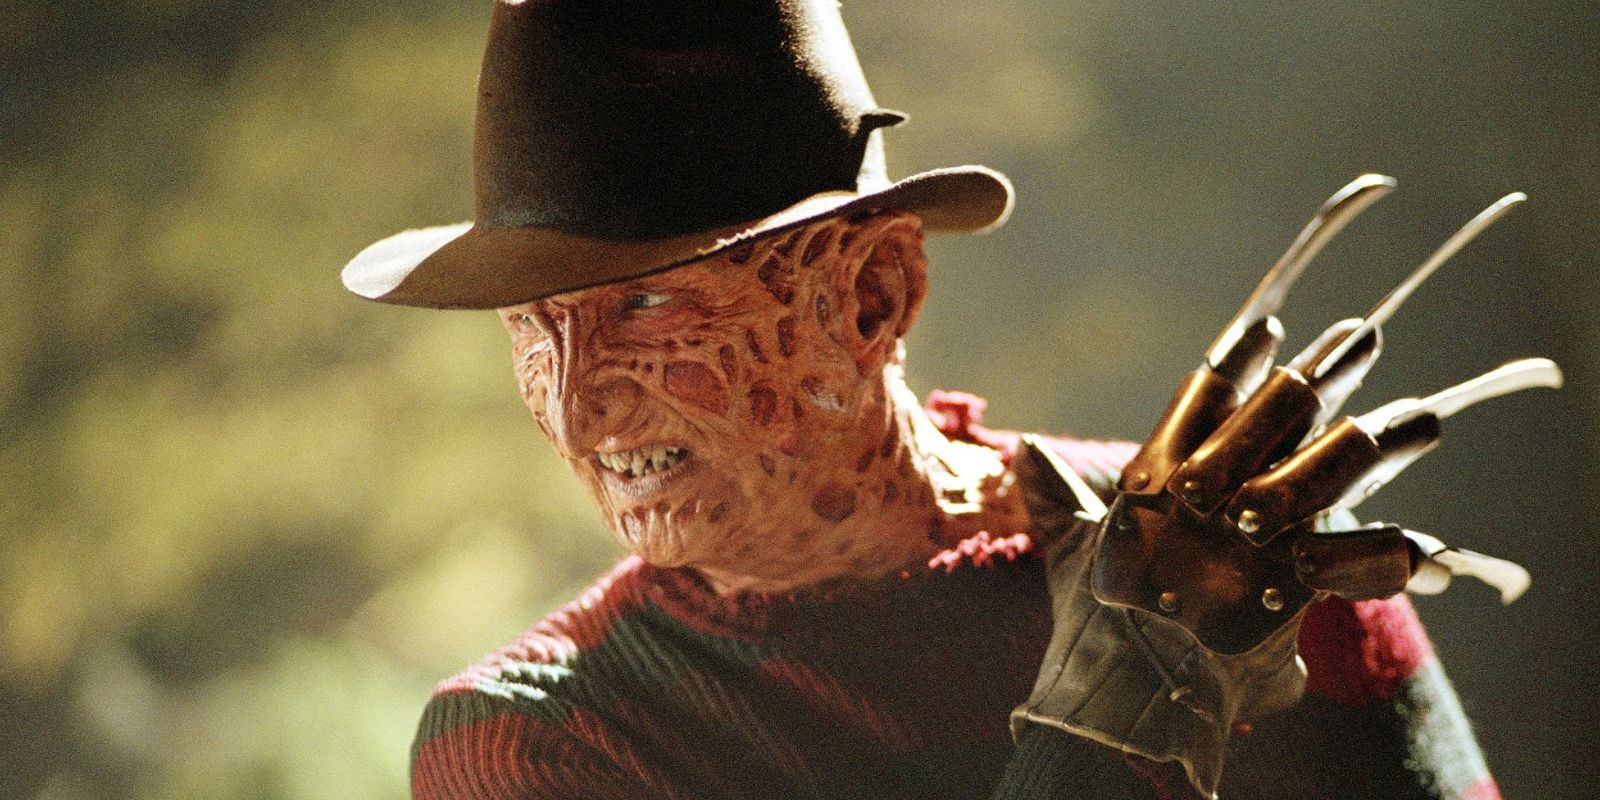 Freddy Krueger from A Nightmare on Elm Street